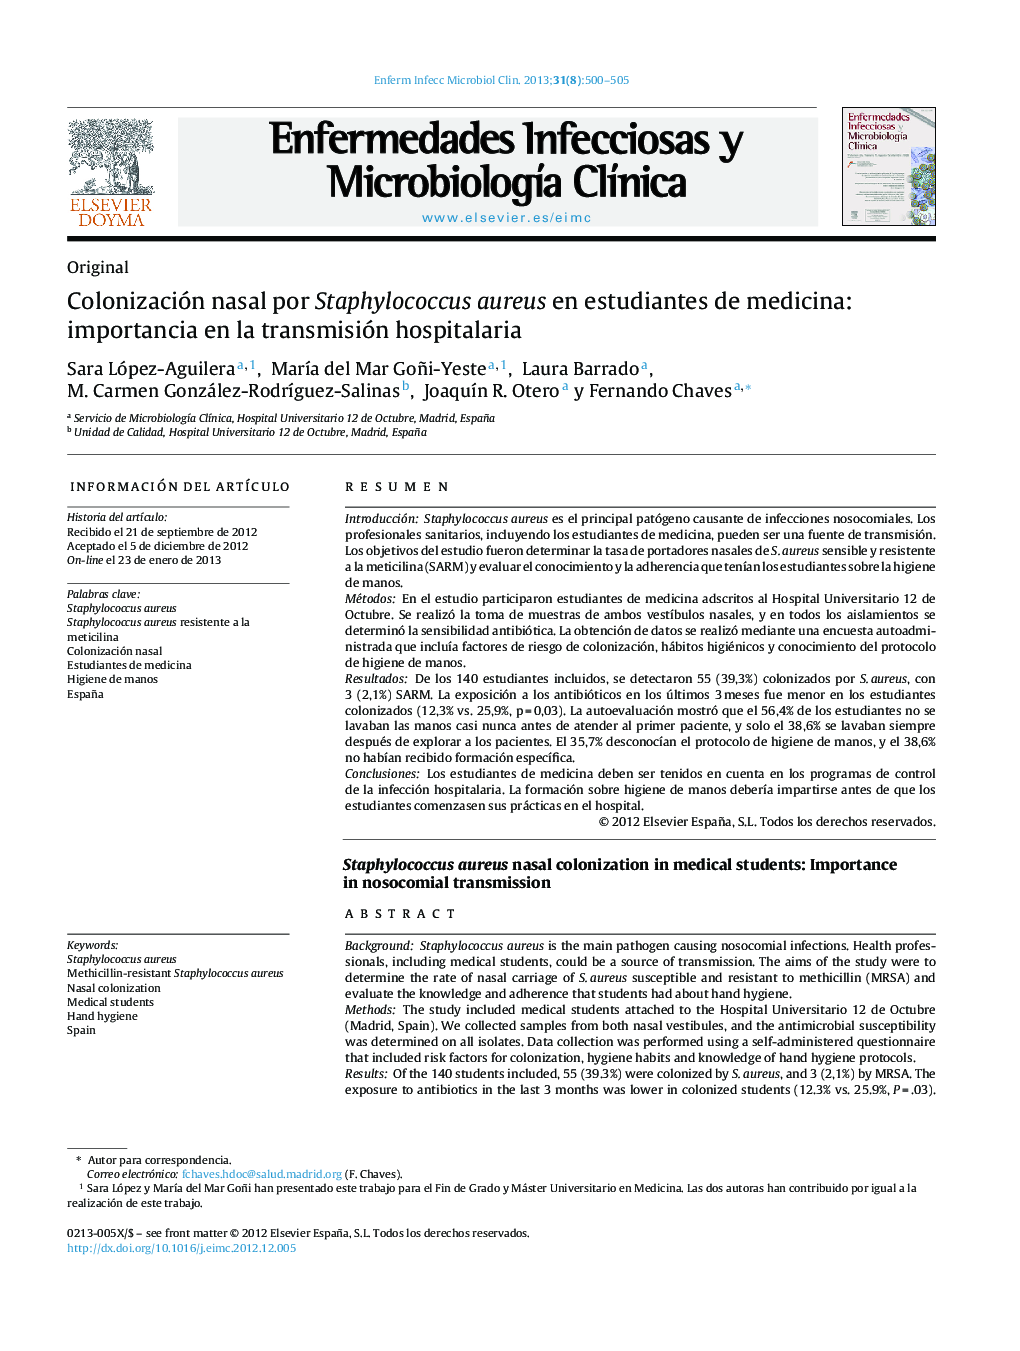 Colonización nasal por Staphylococcus aureus en estudiantes de medicina: importancia en la transmisión hospitalaria